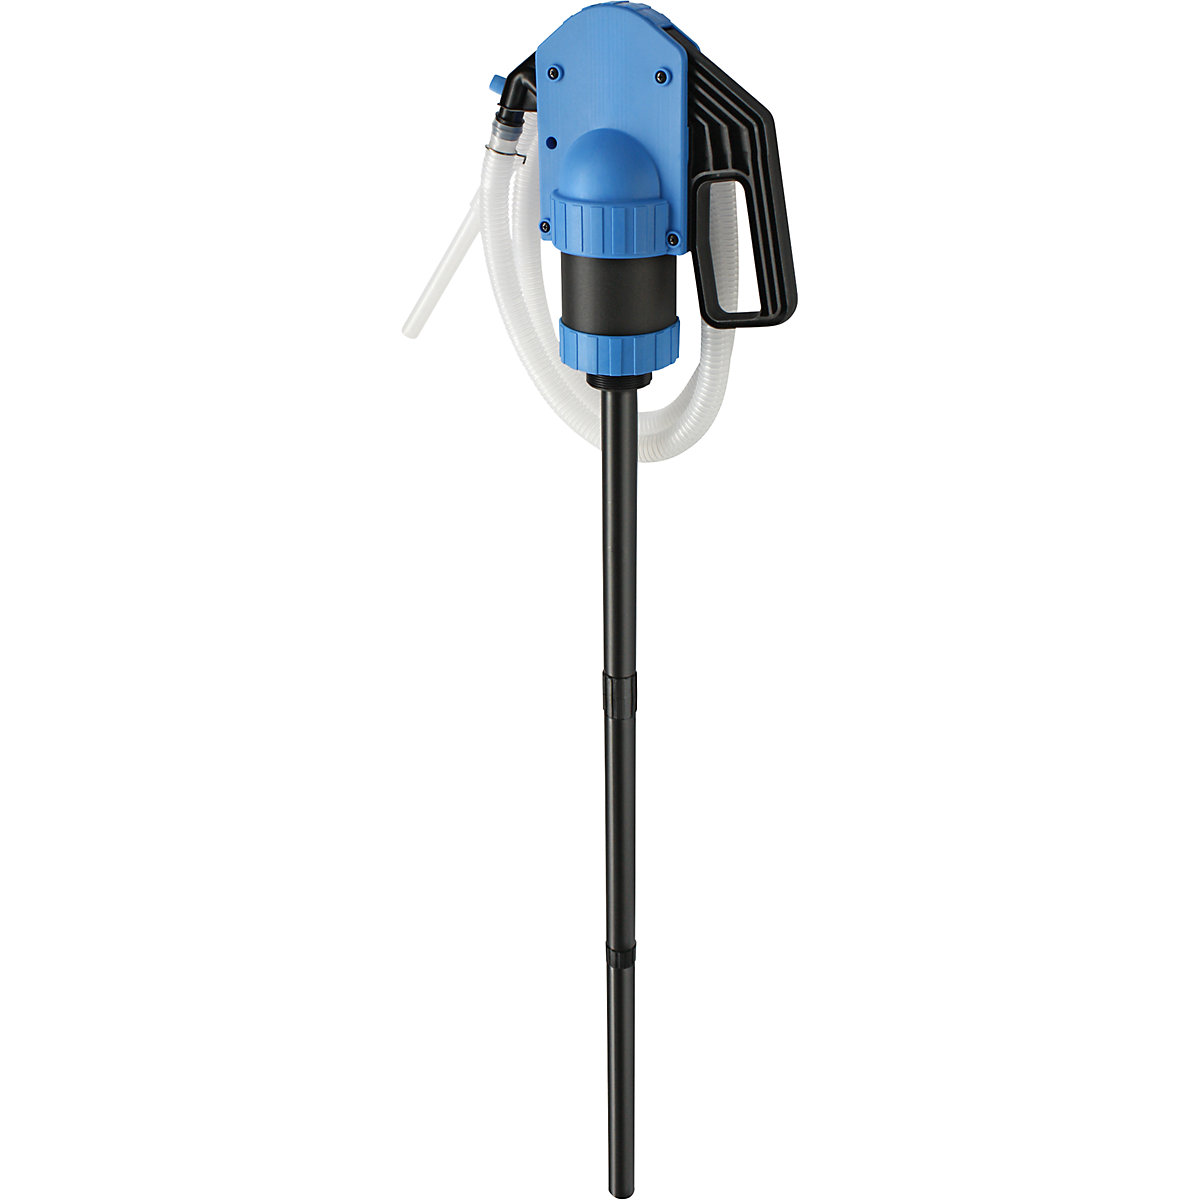 Ručna pumpa za kanistre/bačve – Jessberger, za kiseline, u plavoj boji, 0,5 l/podizaju, od 3 kom.-1